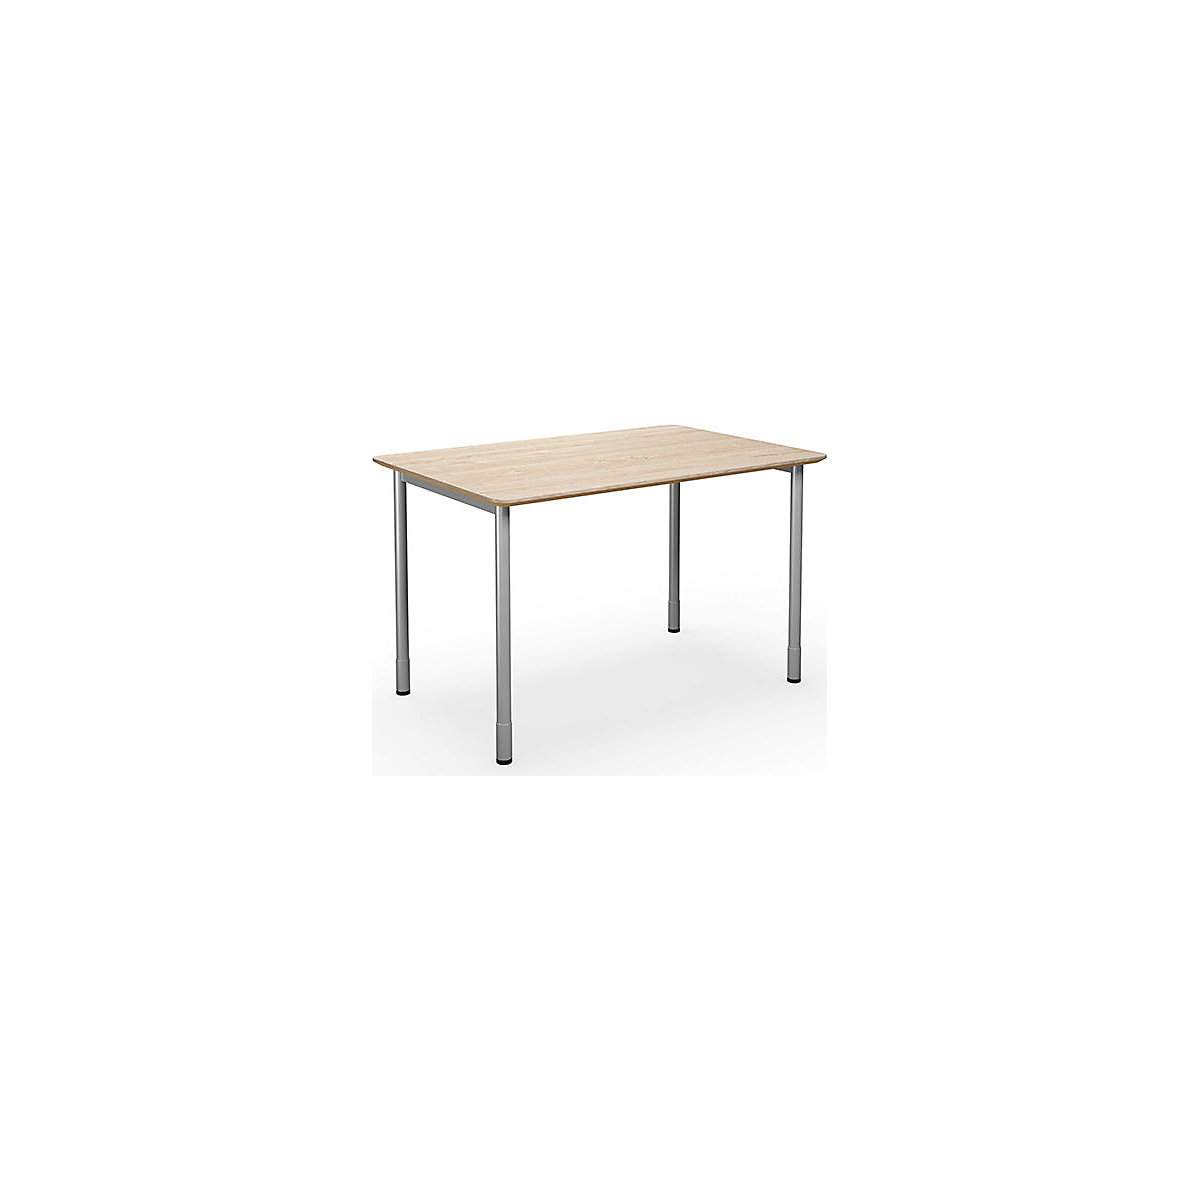 Víceúčelový stůl DUO-C Trend, rovná deska, zaoblené rohy